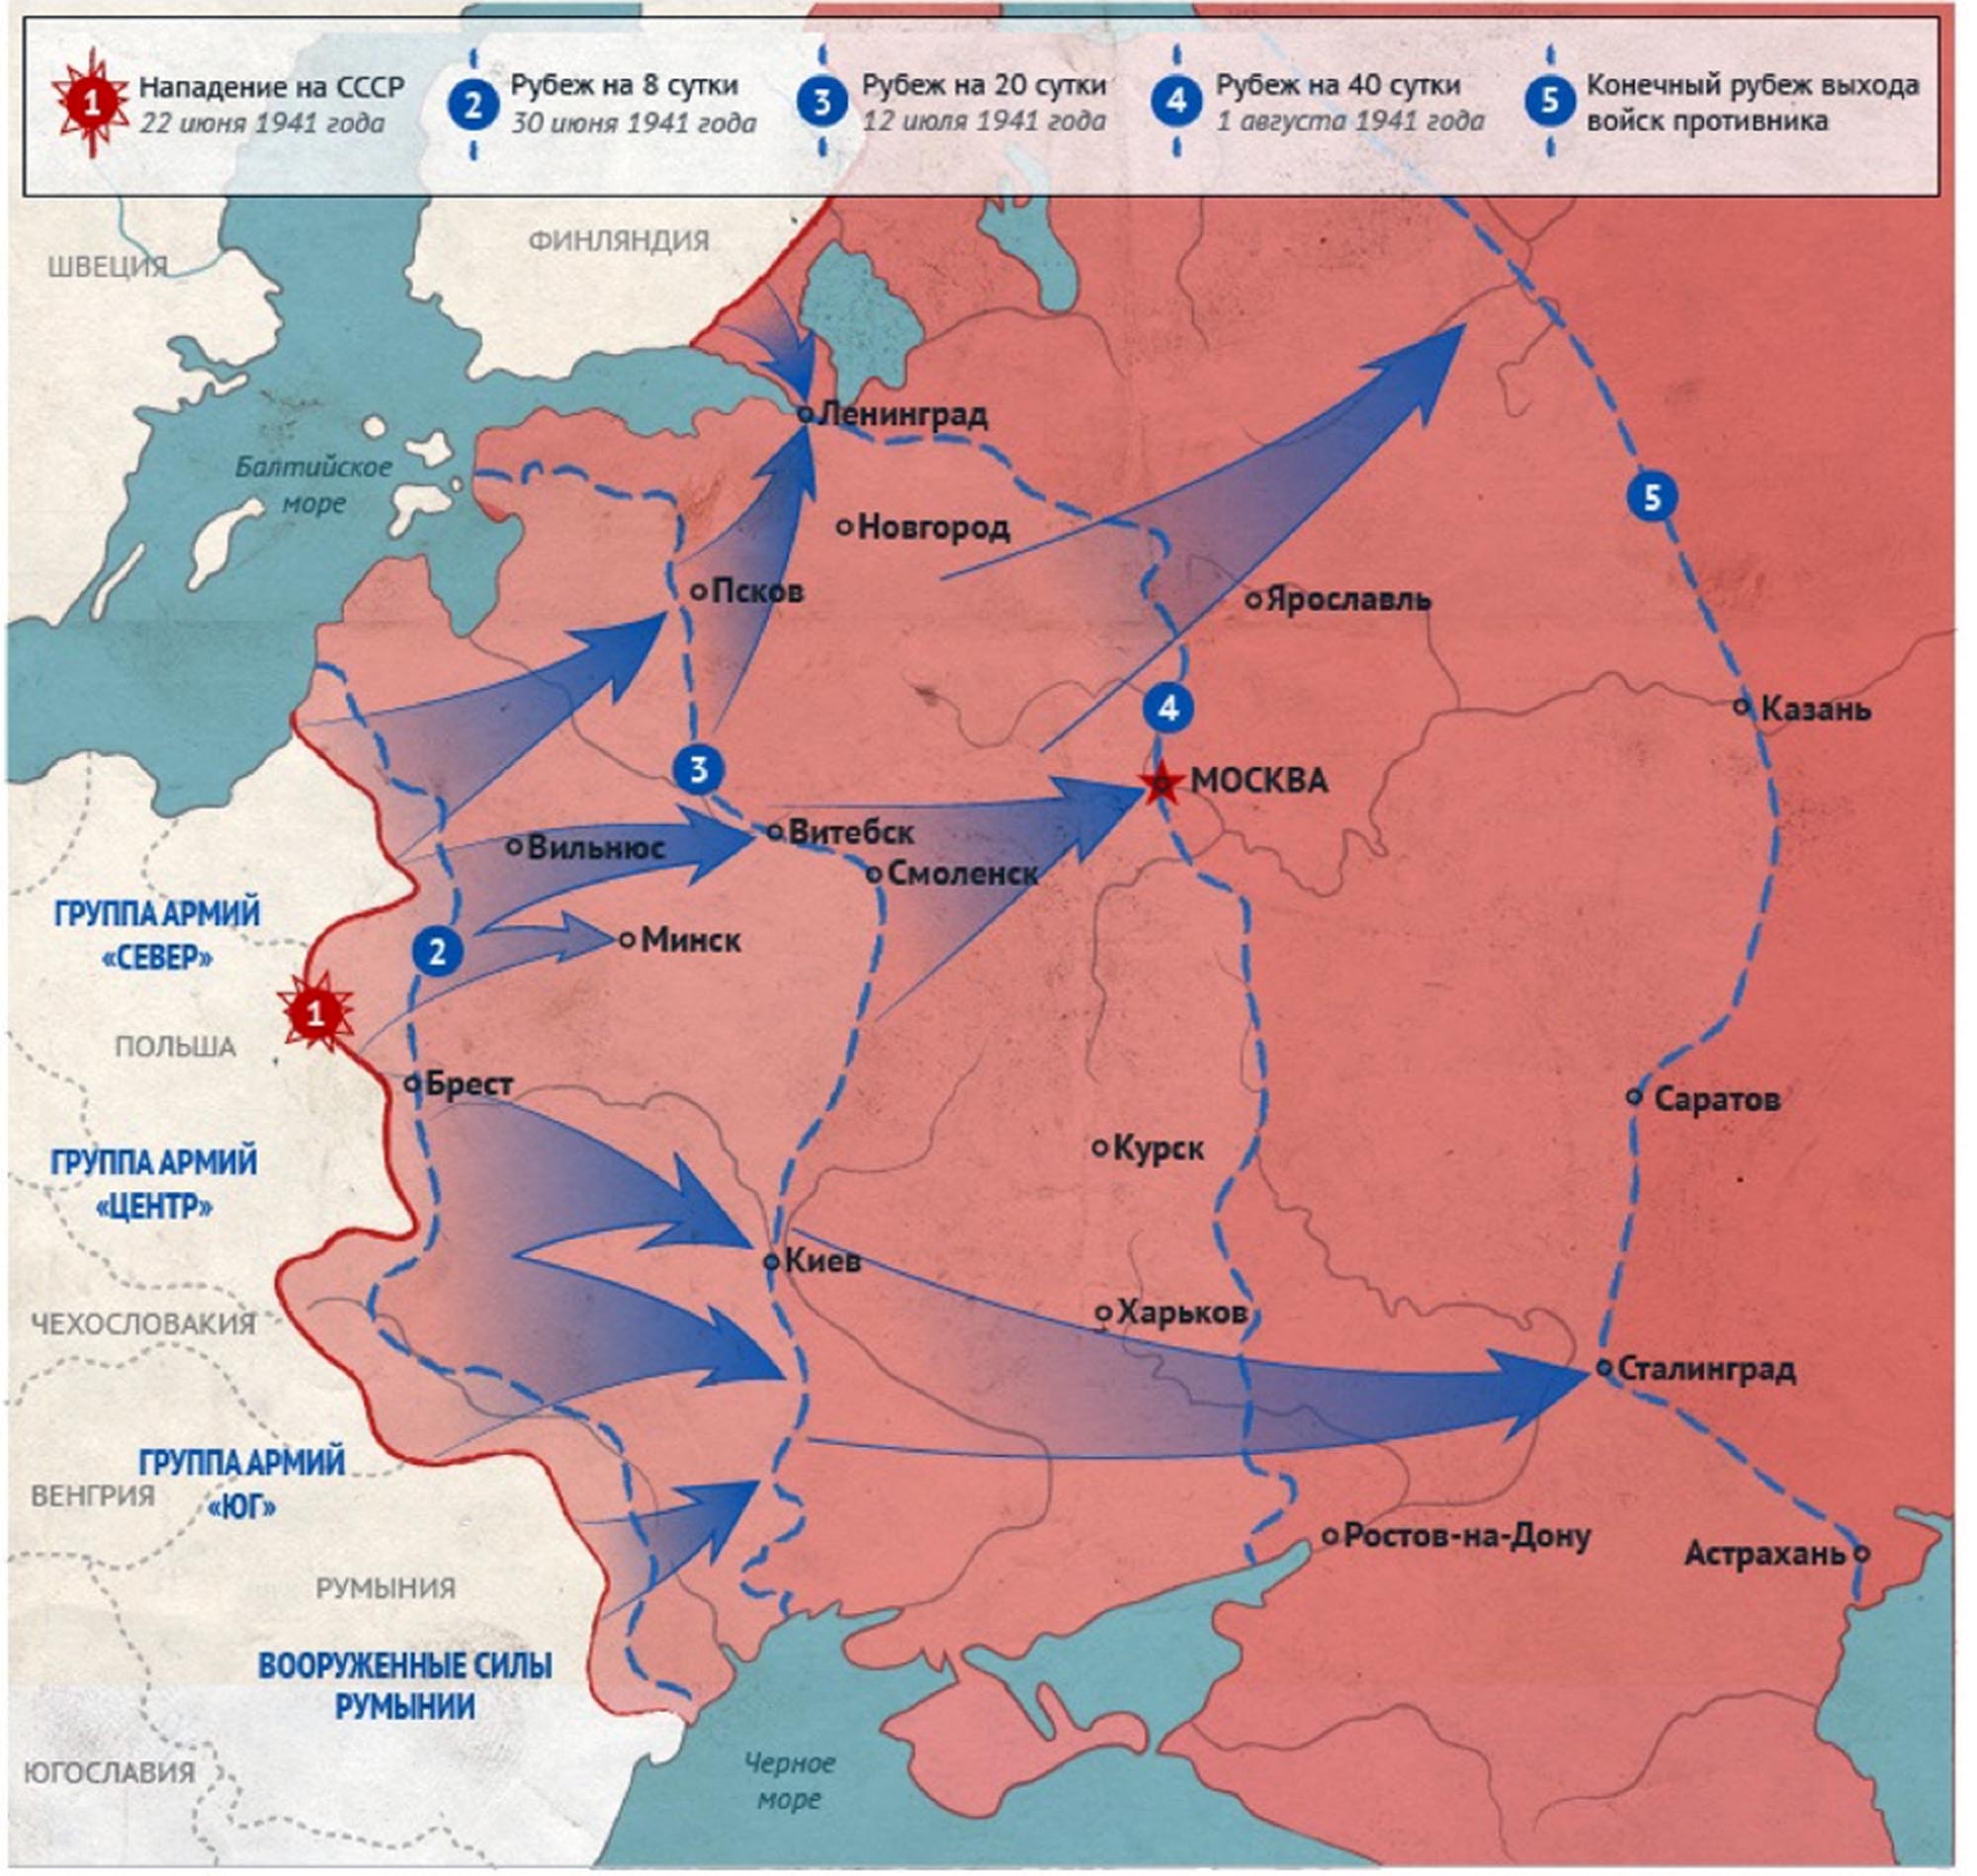 Нападение на советский союз 1941. Карта 2 мировой войны план Барбаросса. План нападения Германии на СССР. Карта плана Барбаросса 1941.